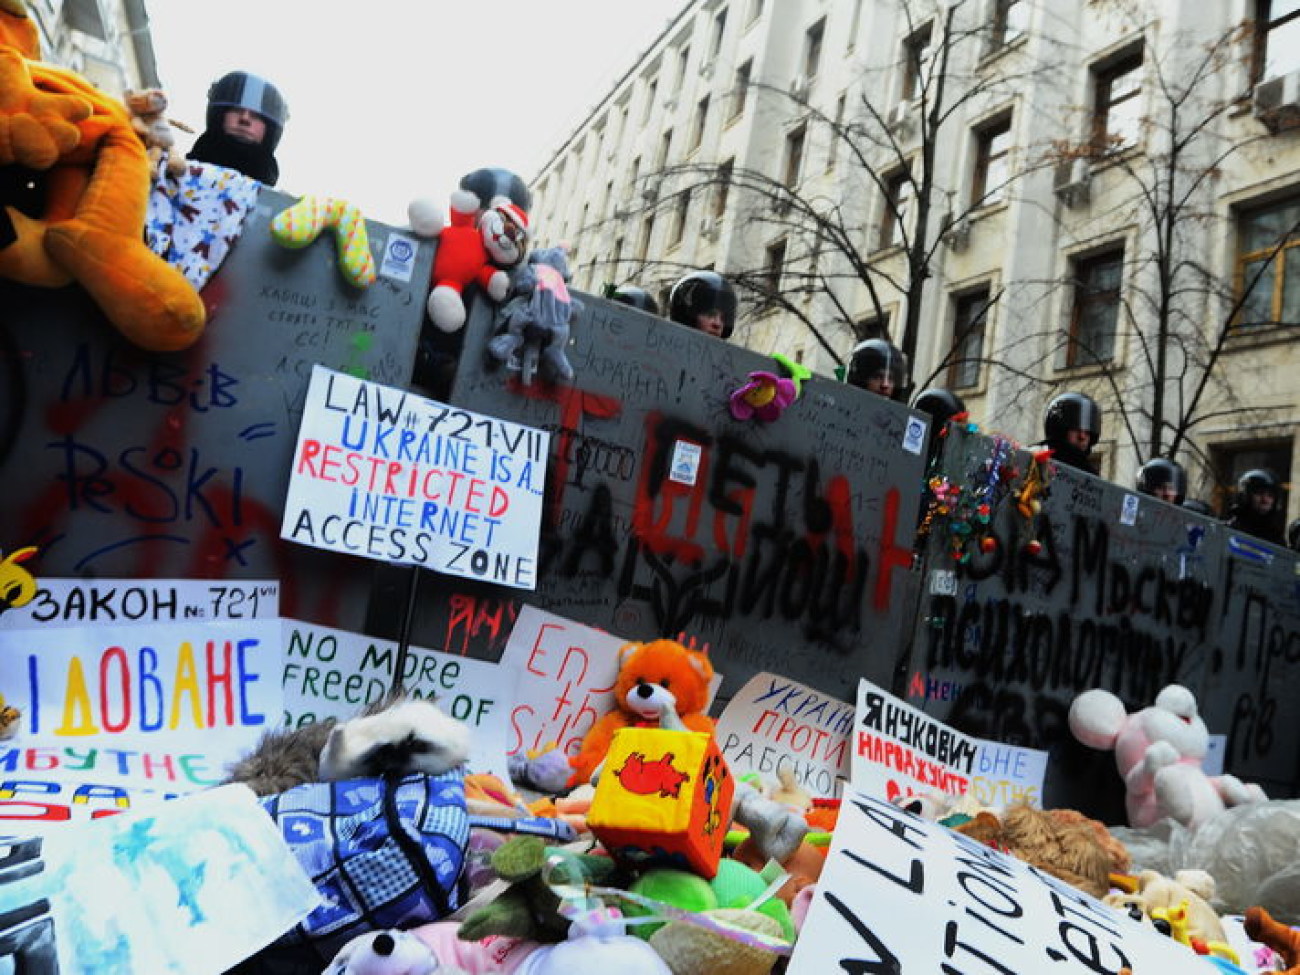 Под Администрацию Президента украинцы принесли мягкие игрушки, 19 января 2014г.